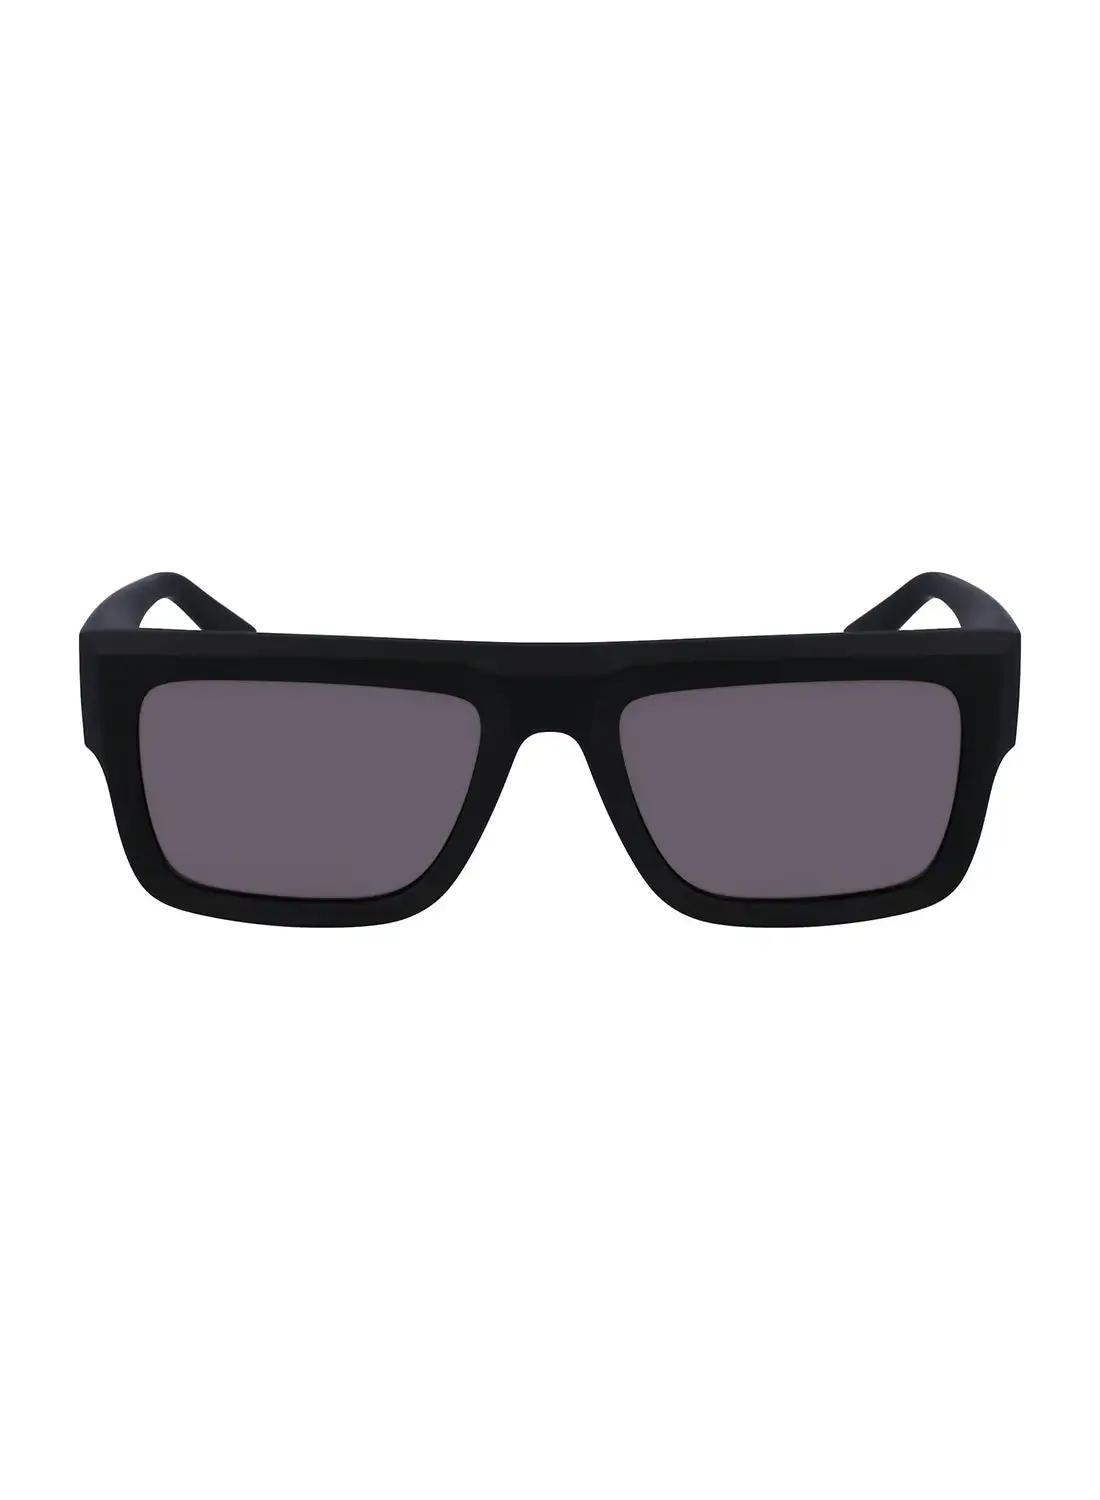 Calvin Klein Jeans Unisex Rectangular Sunglasses - CKJ23642S-002-5419 - Lens Size: 54 Mm